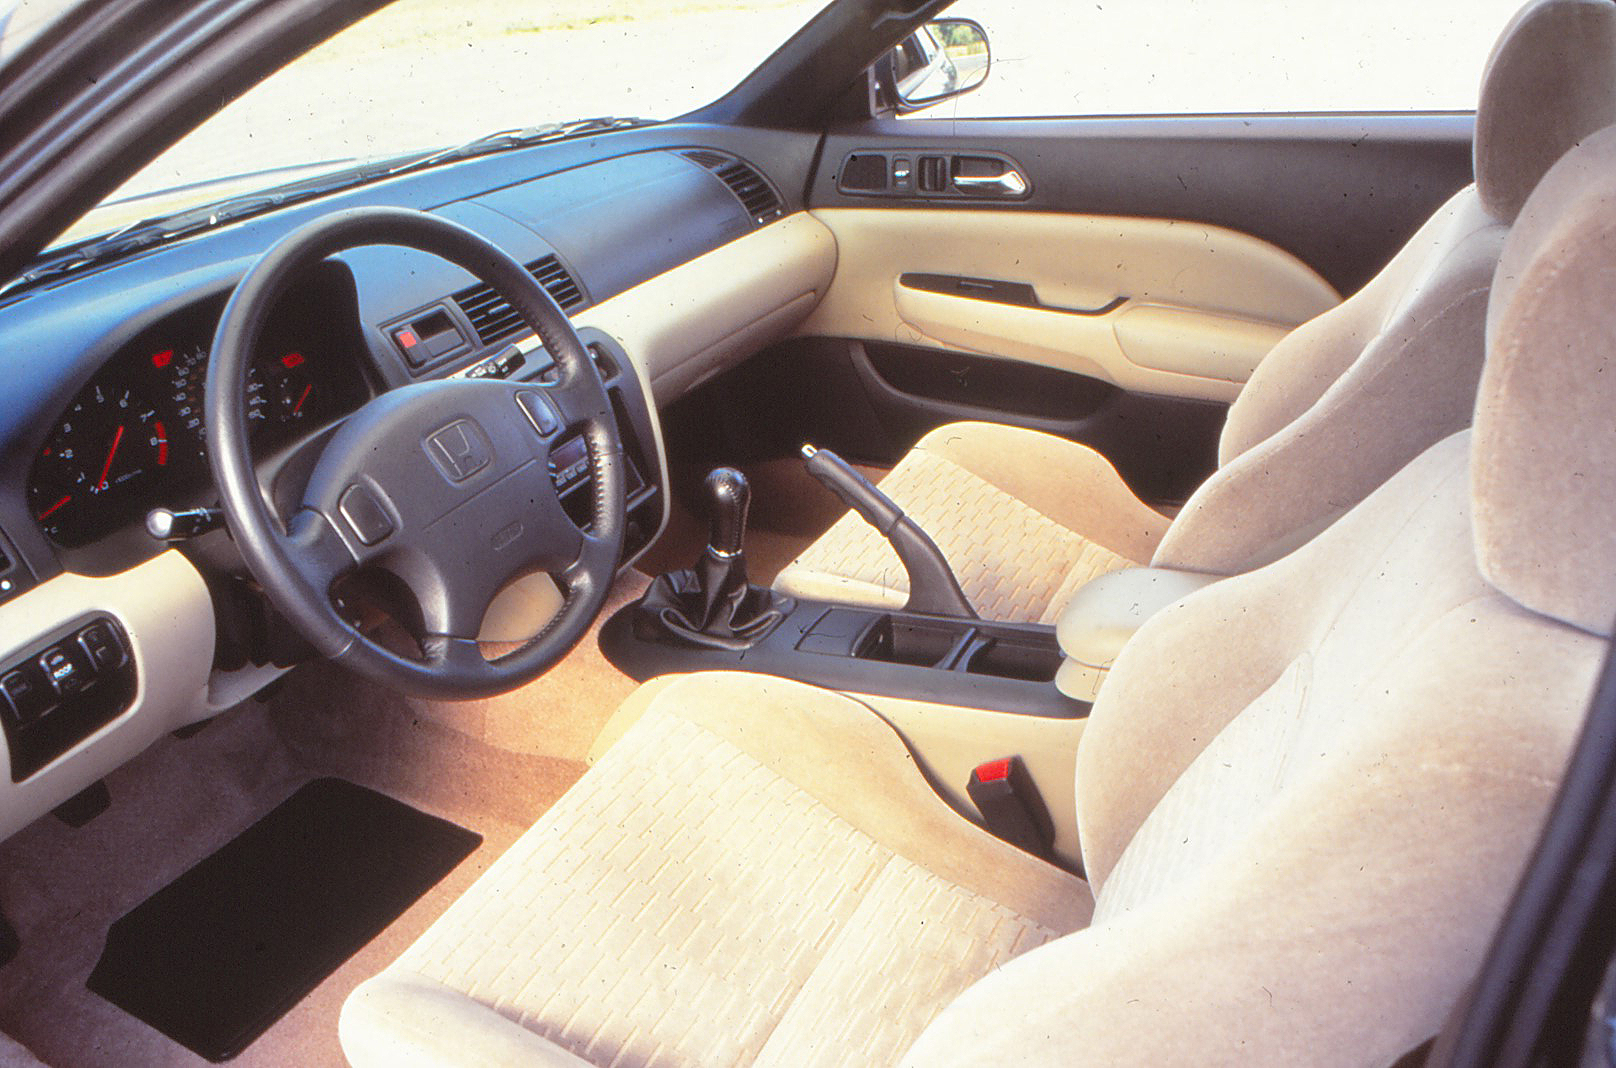 1995 honda prelude interior